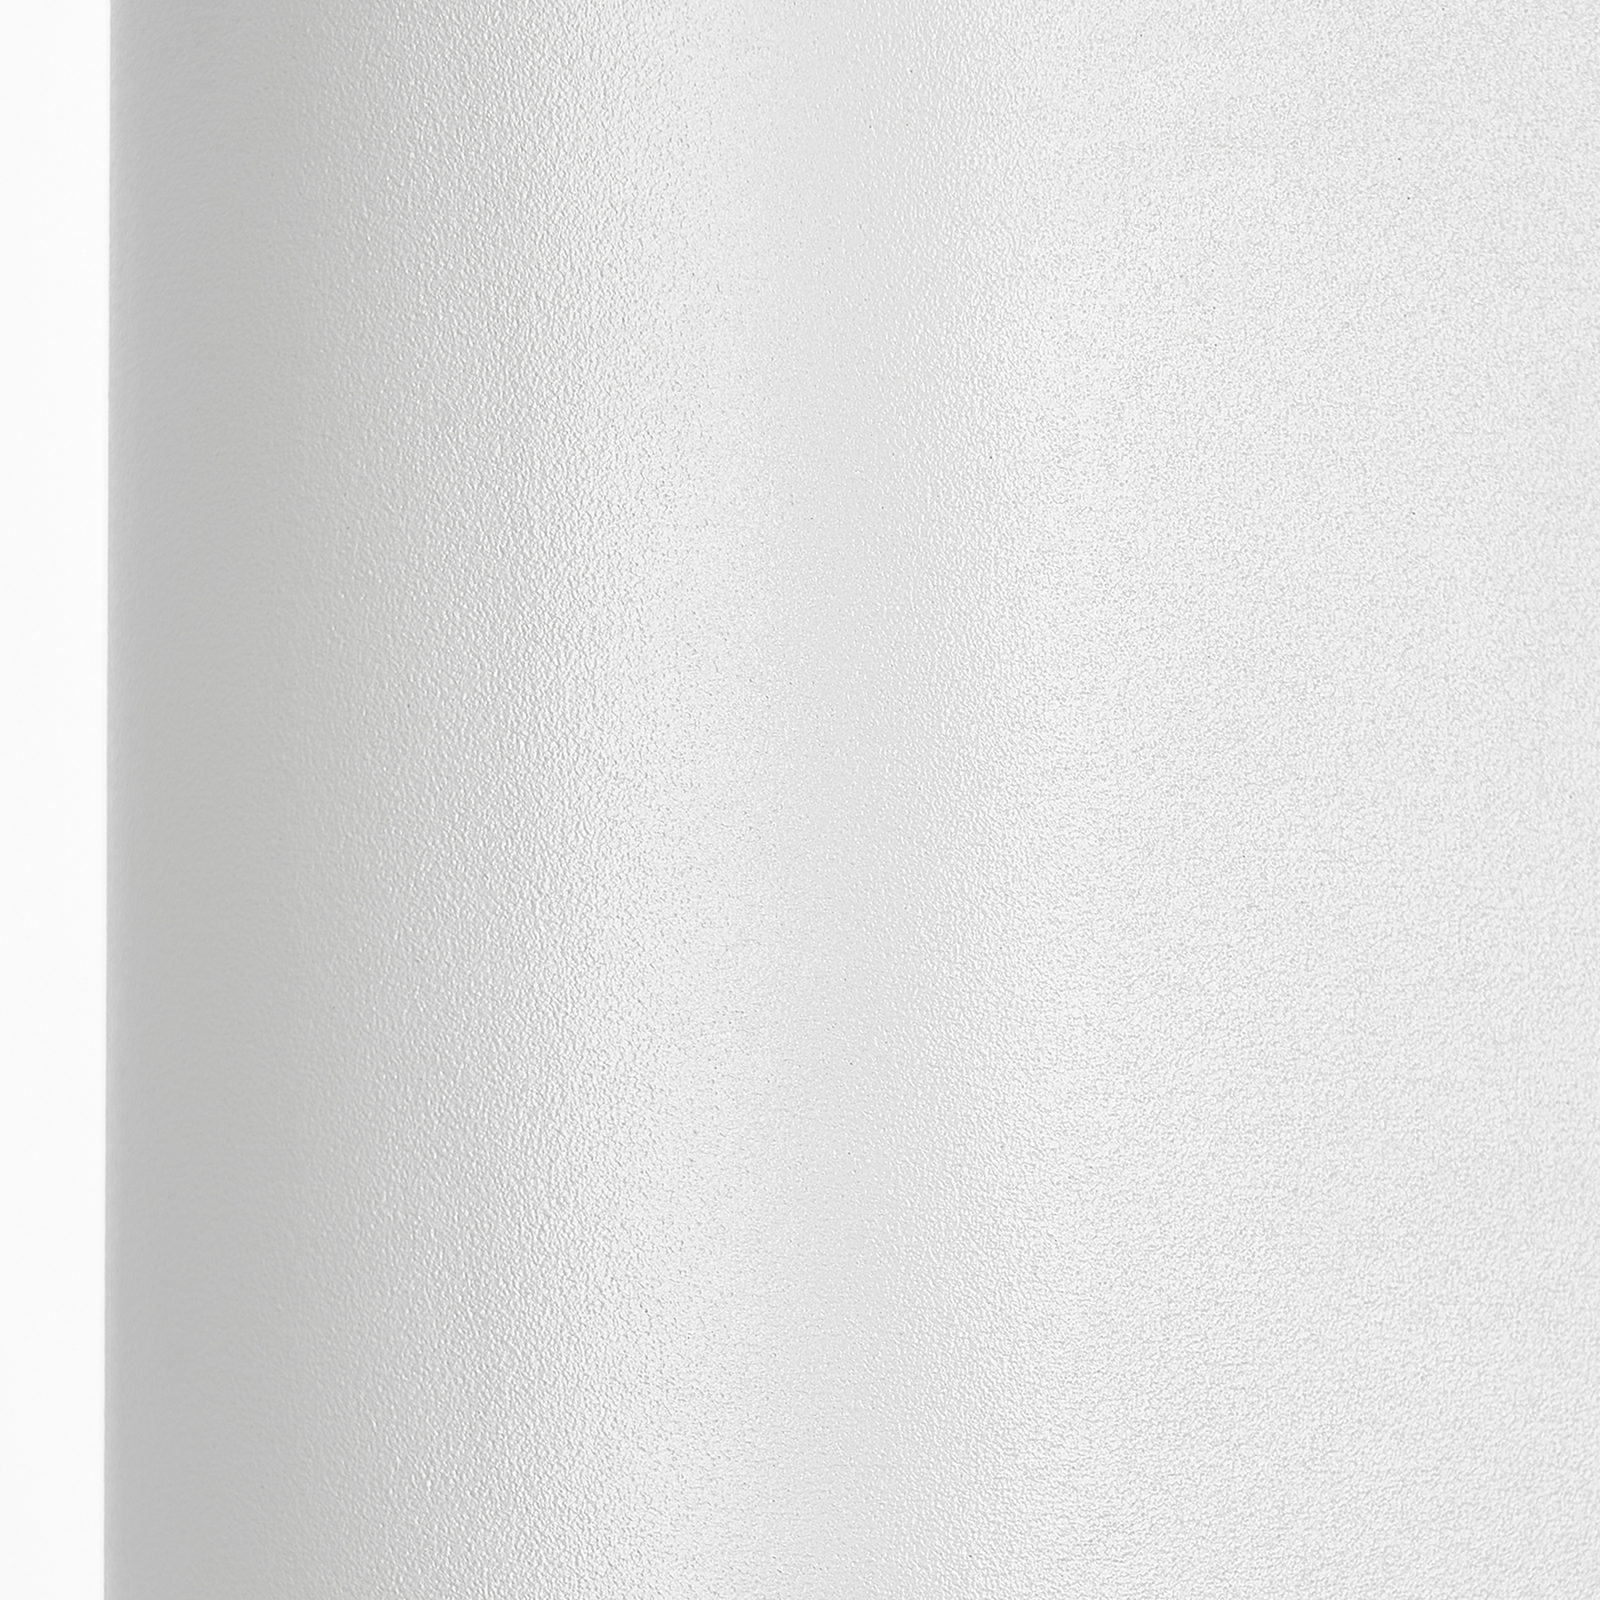 Prios kültéri fali lámpa Tetje, fehér, kerek, 16 cm